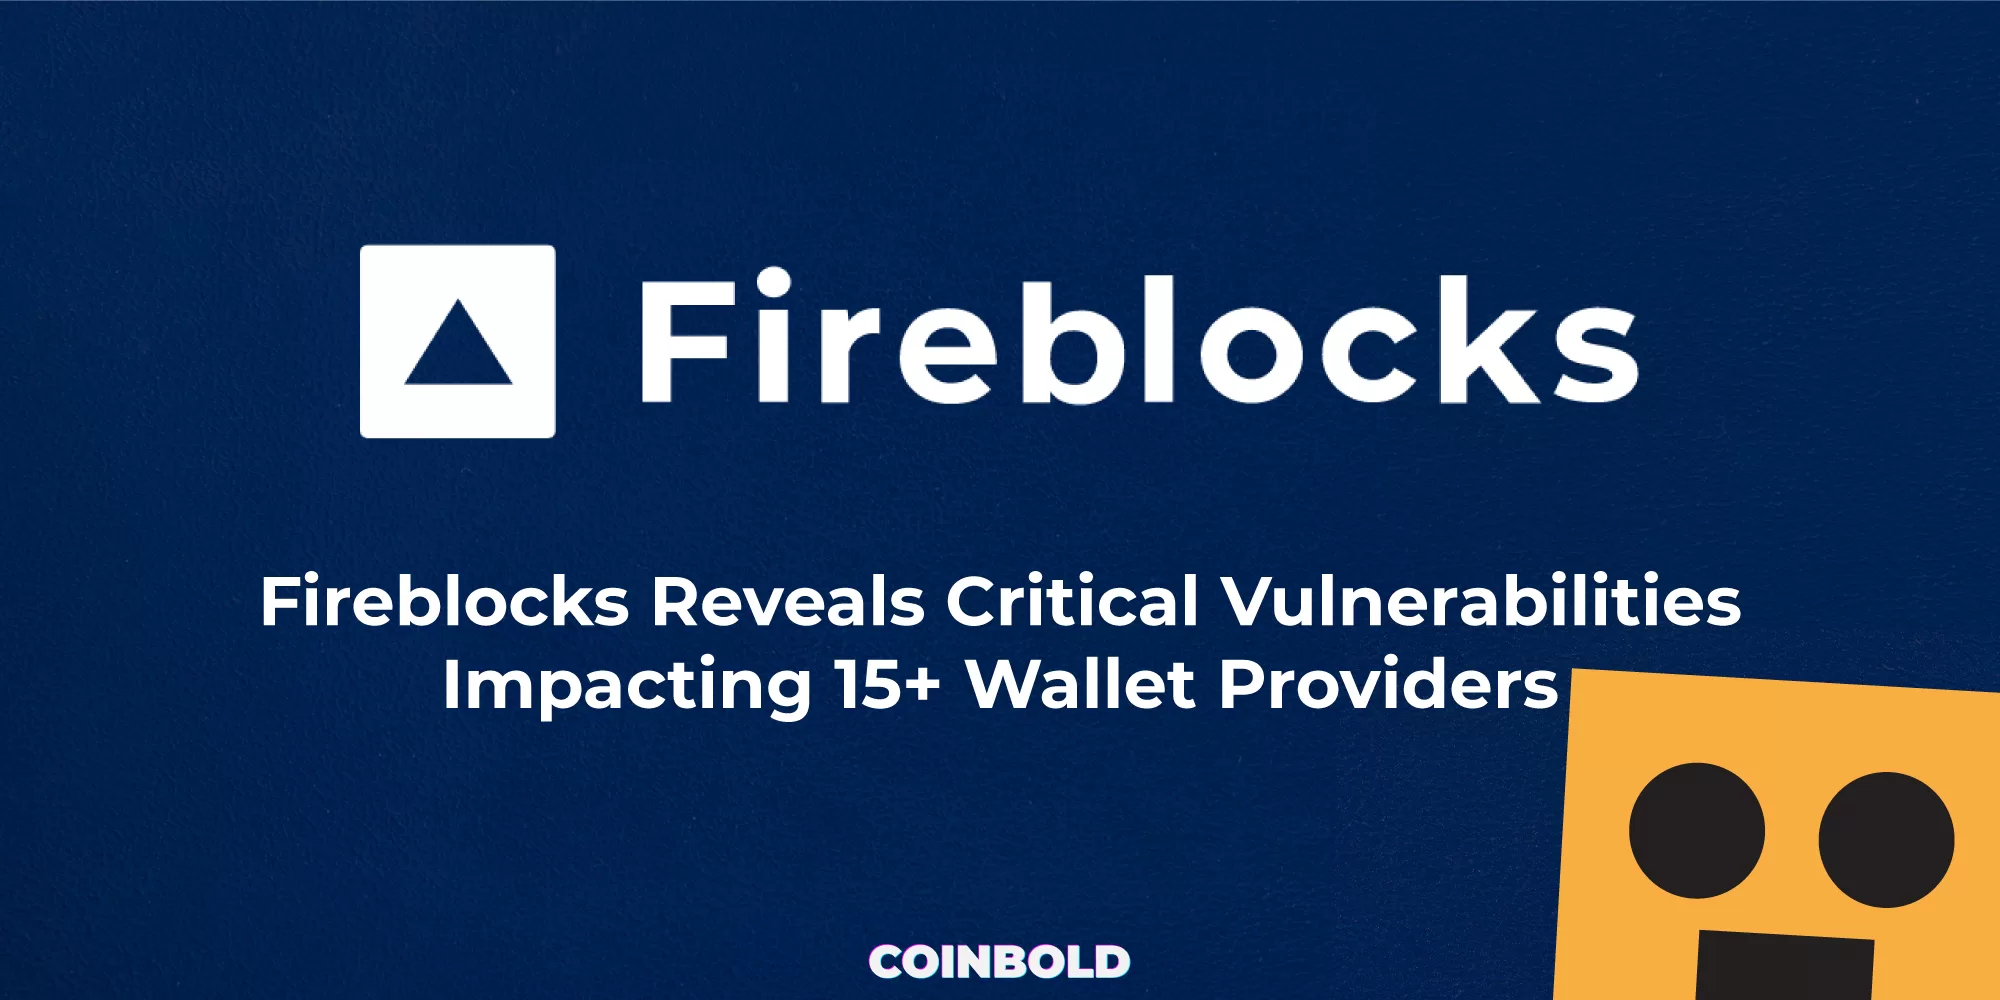 Fireblocks Reveals Critical Vulnerabilities Impacting 15+ Wallet Providers